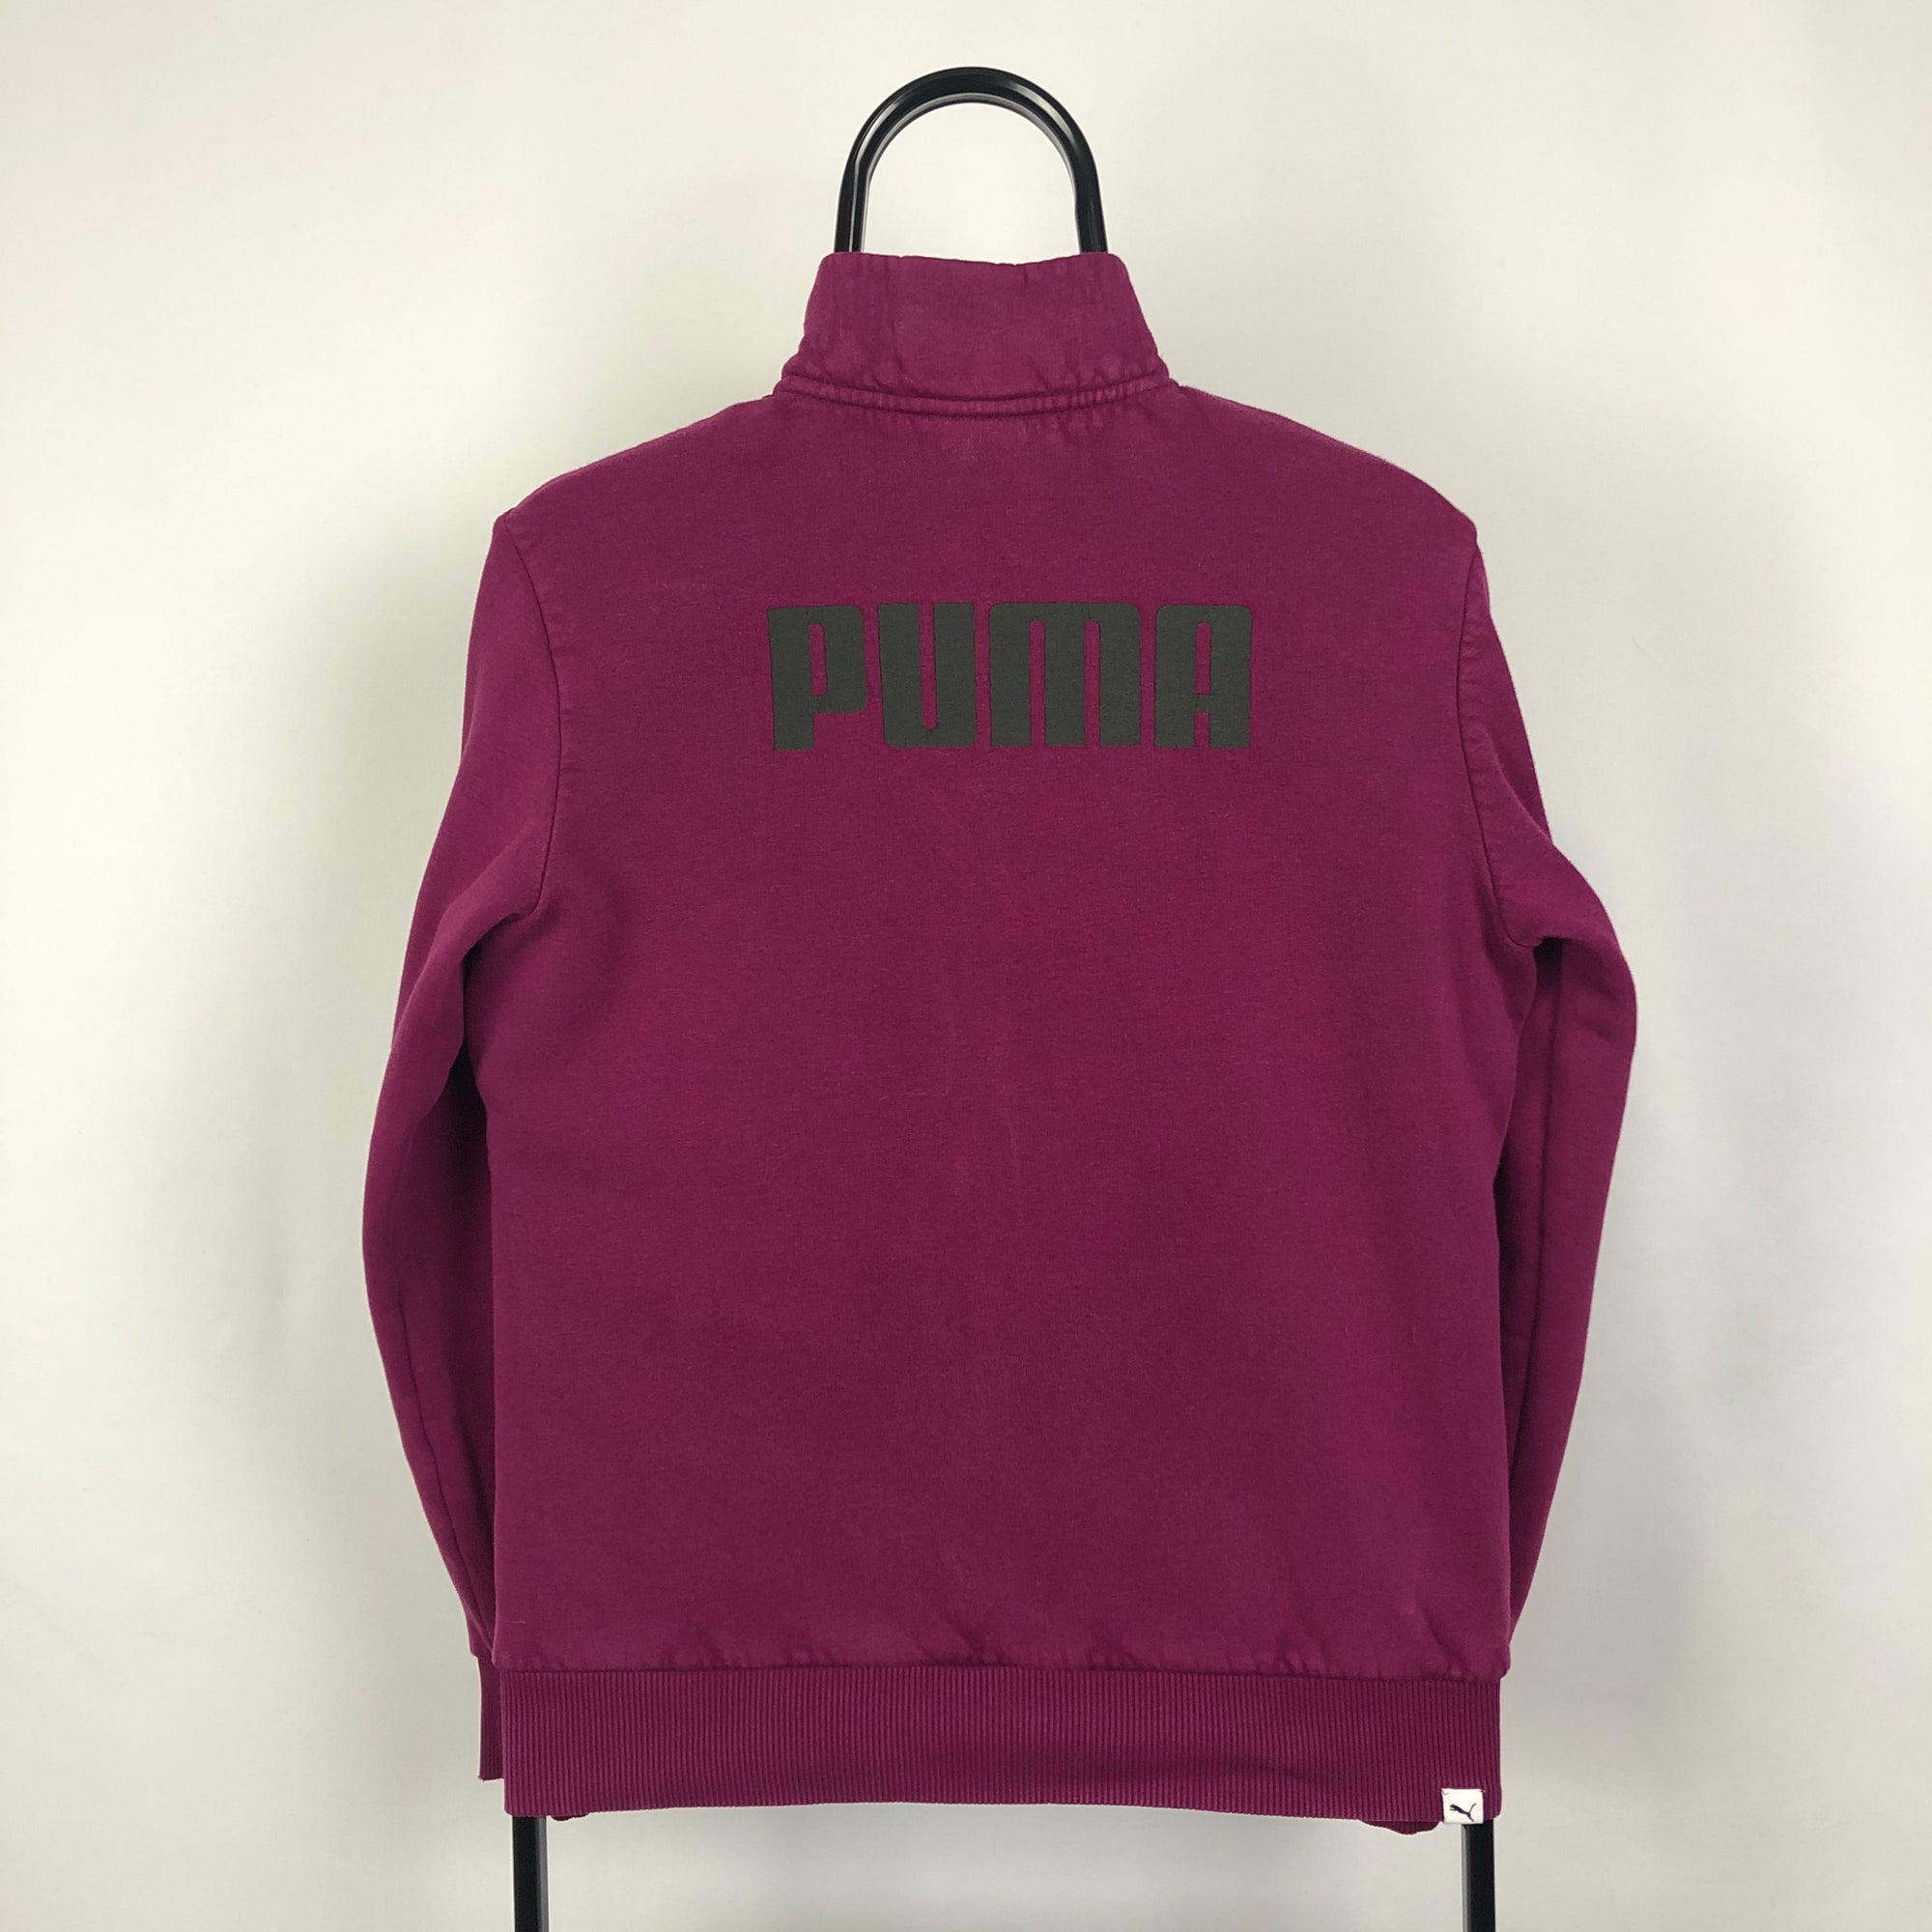 Puma Zip Sweatshirt in Purple - Men's XS/Women's Medium